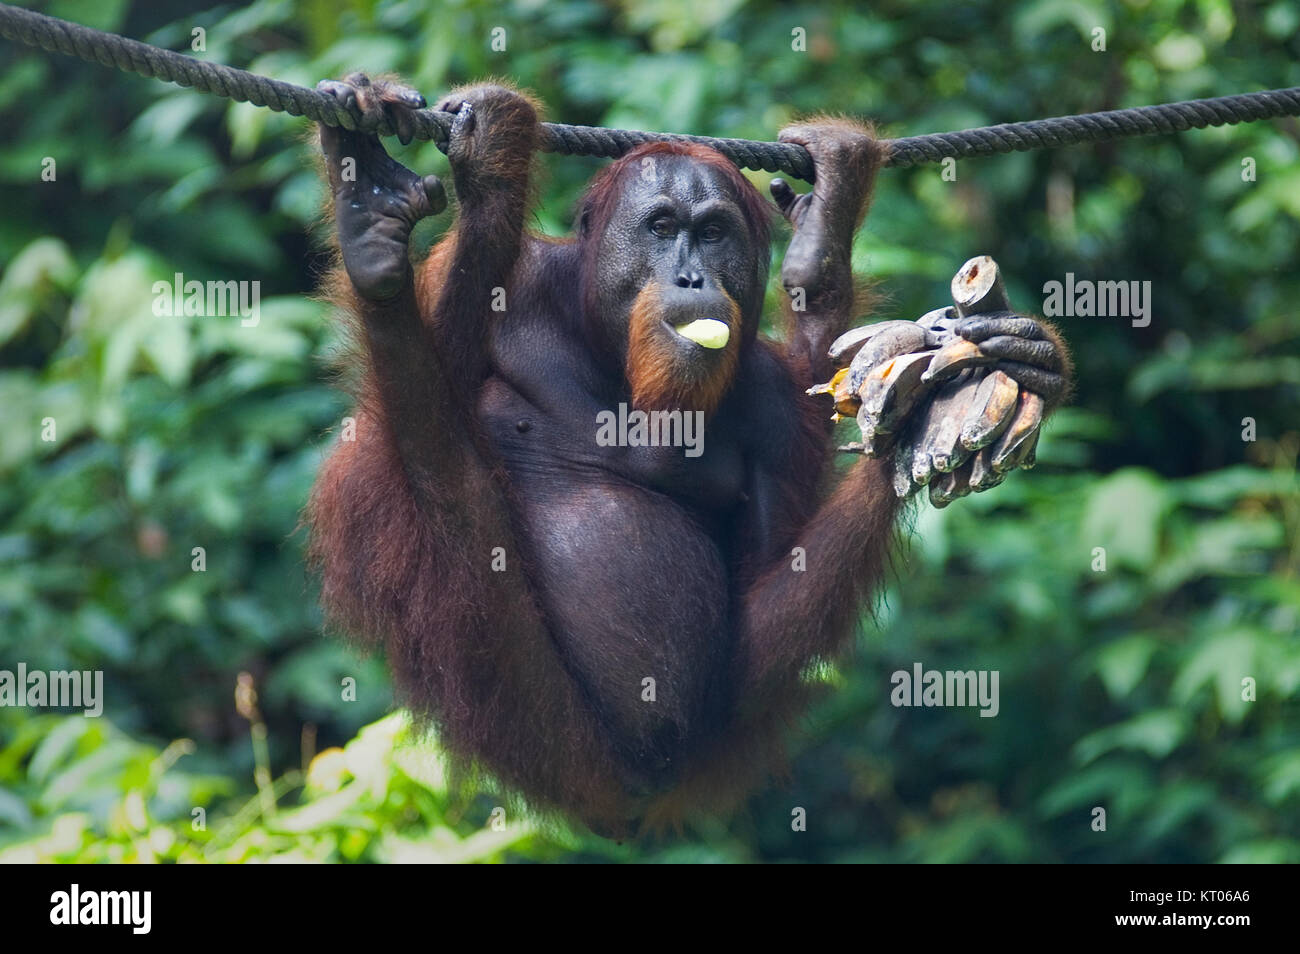 Orangutang in Sepilok nature reserve in Sabah, Malaysian Borneo munching a bunch of bananas Stock Photo